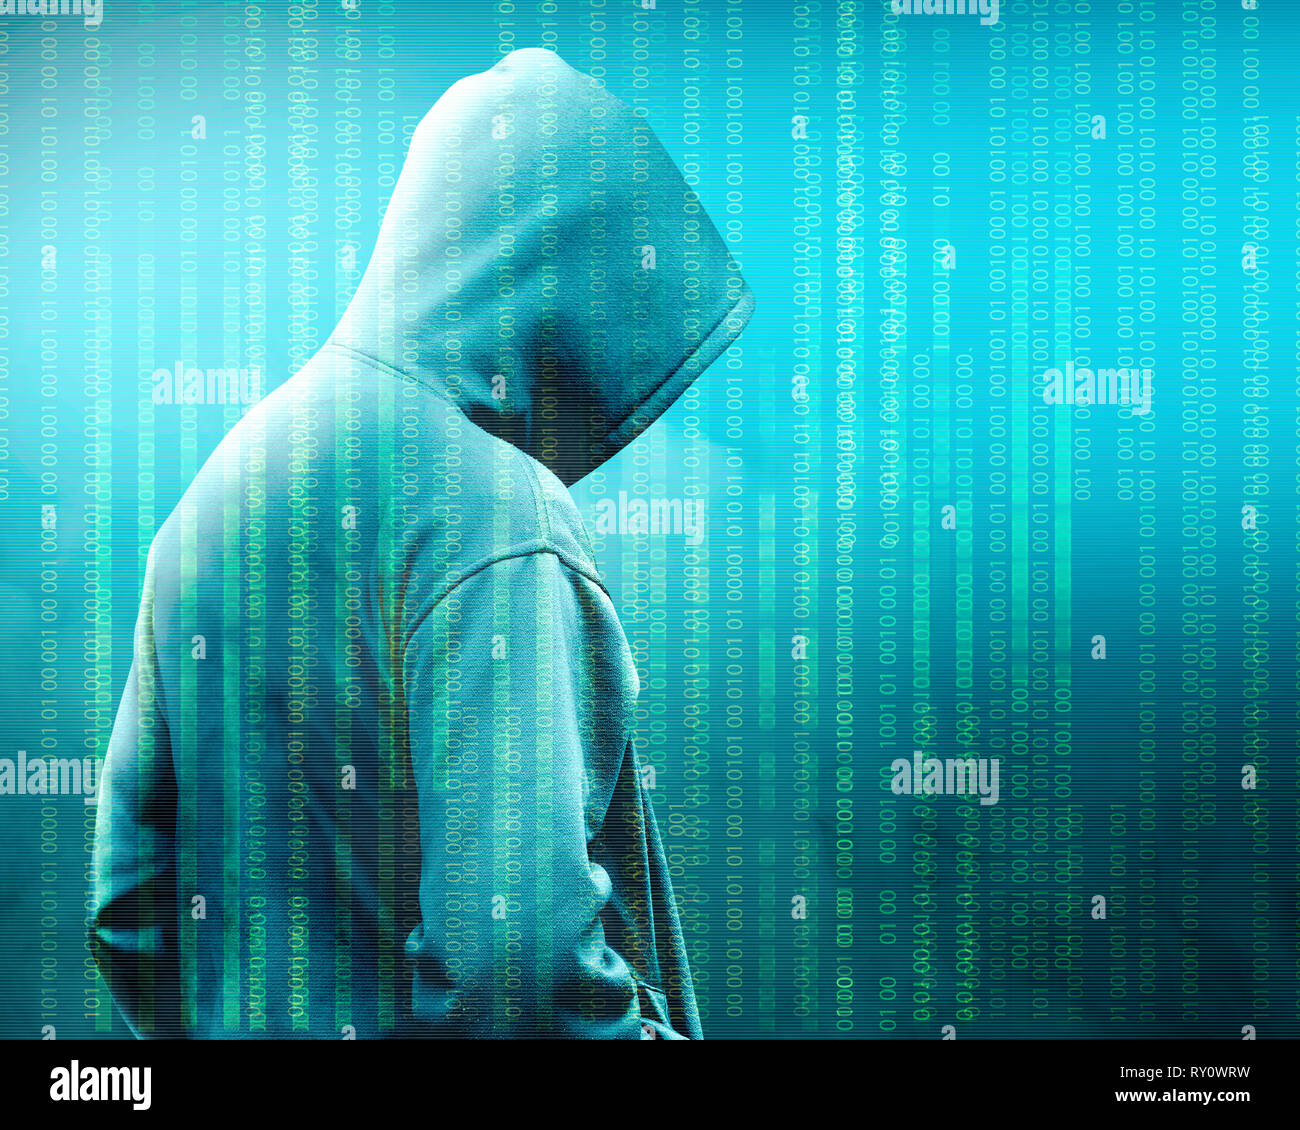 Vue arrière du hacker en hoodie noir debout avec un code binaire sur fond vert Banque D'Images